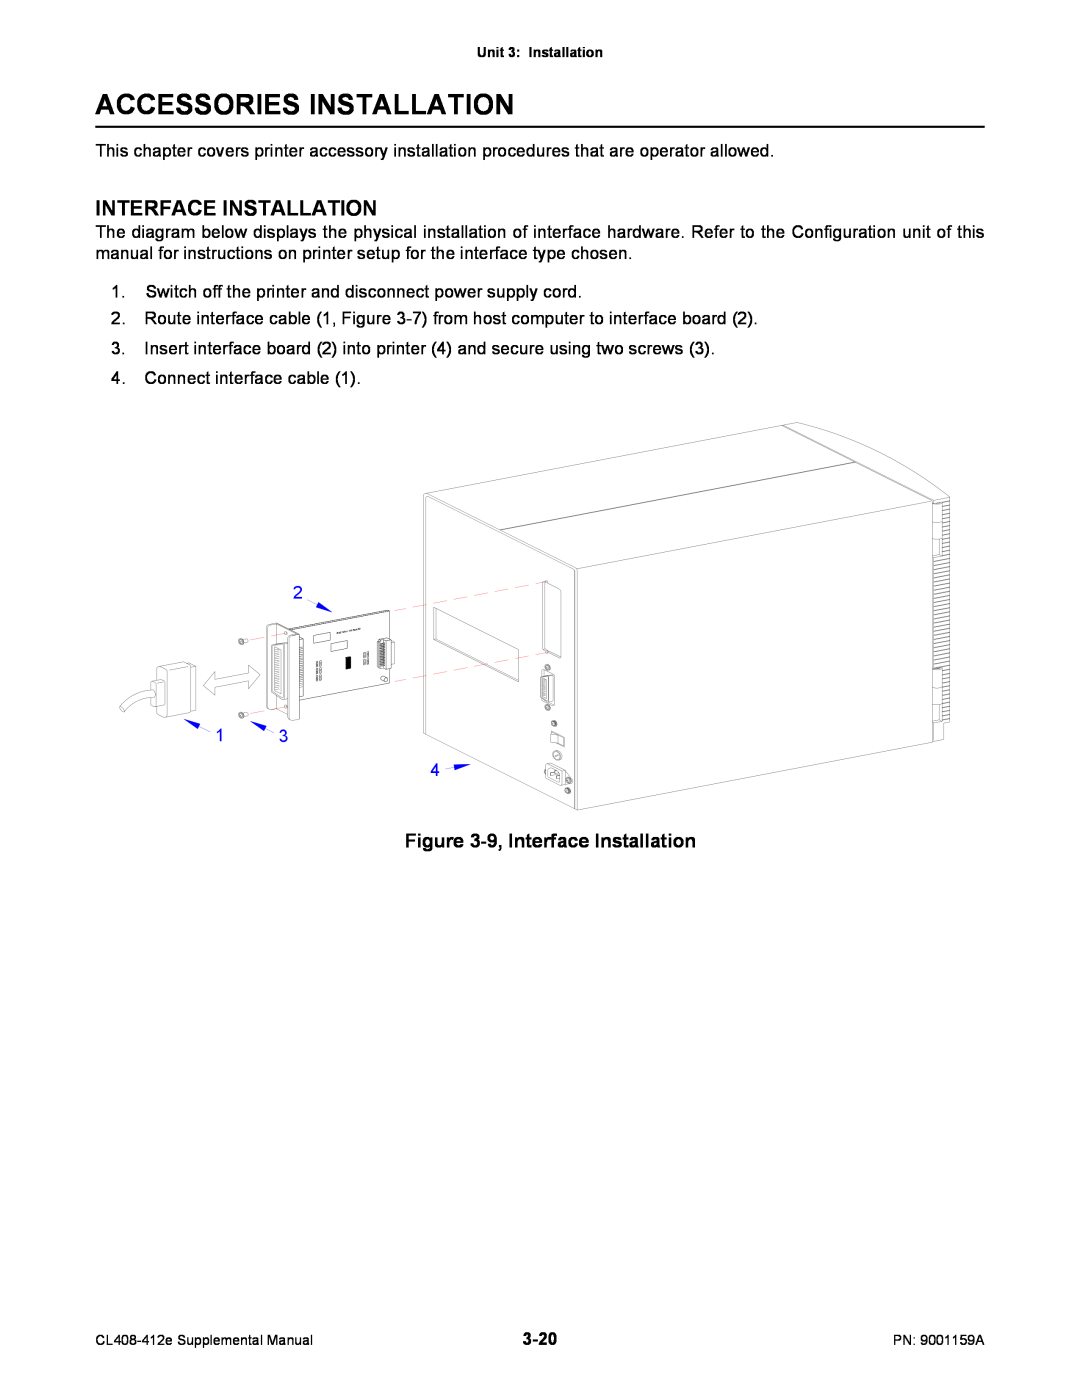 SATO CL408-412e manual Accessories Installation, 9, Interface Installation 